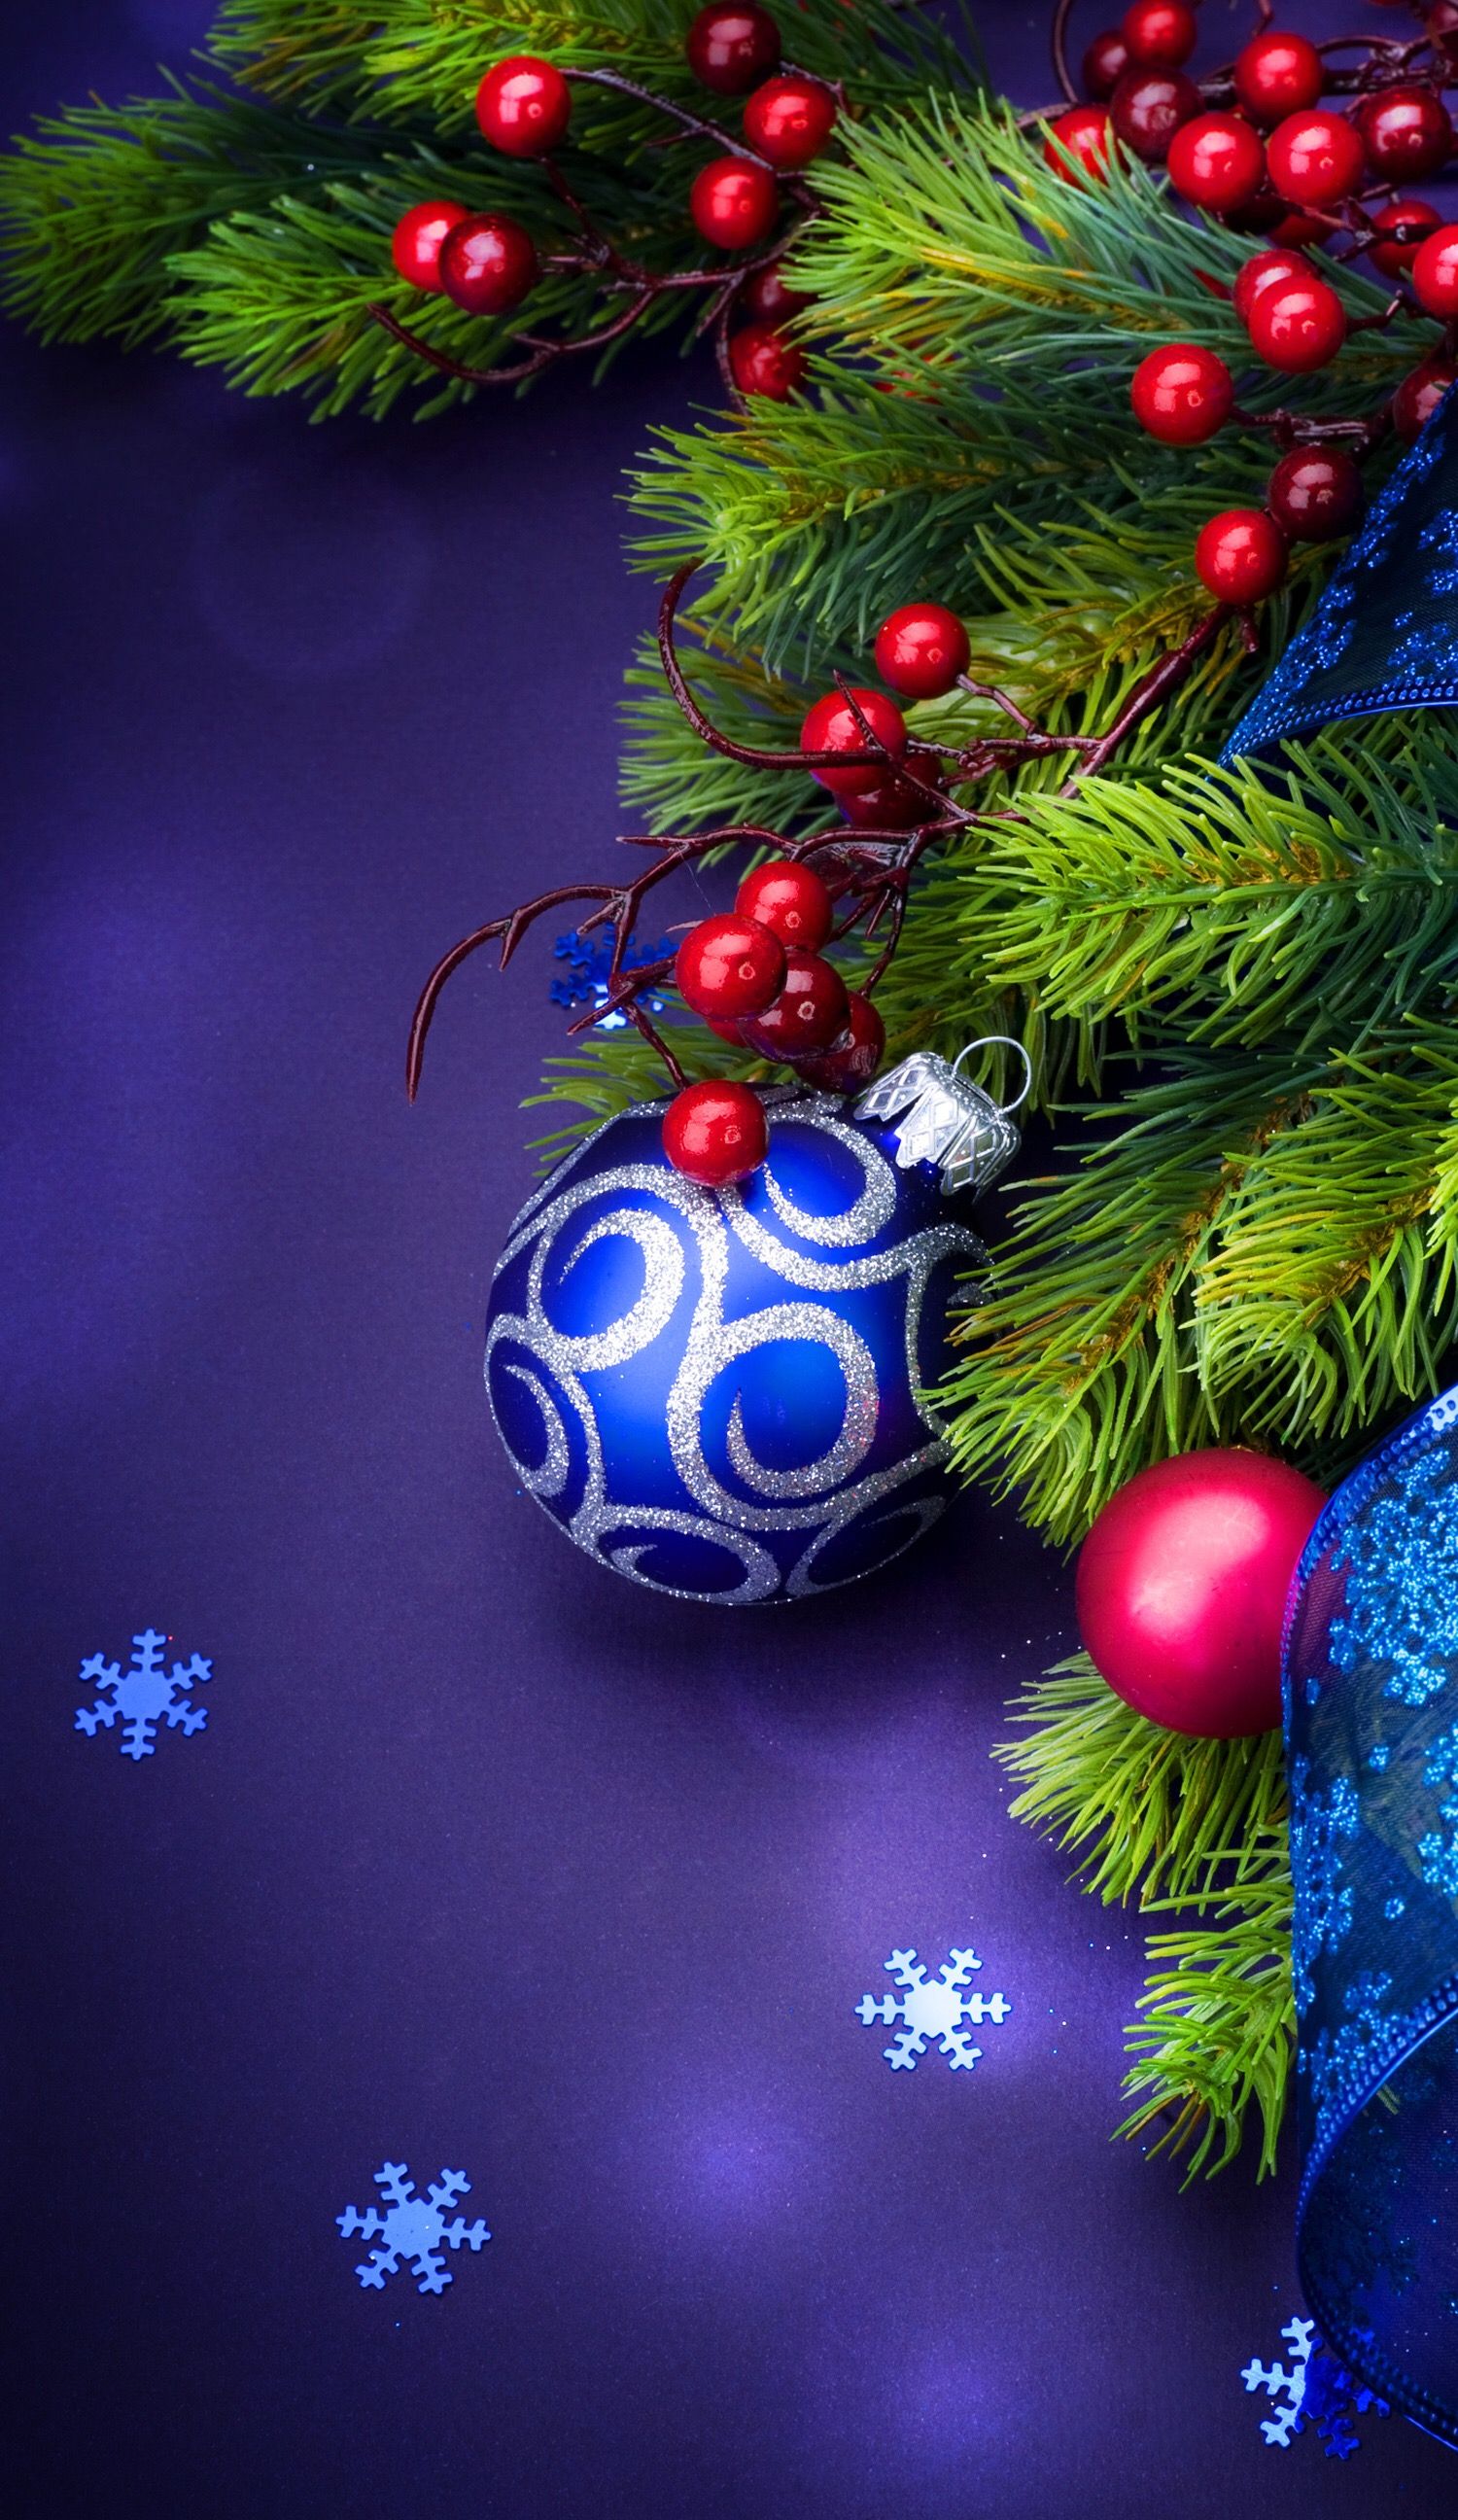 クリスマスライブ壁紙,クリスマスツリー,クリスマスオーナメント,クリスマスの飾り,木,モミ